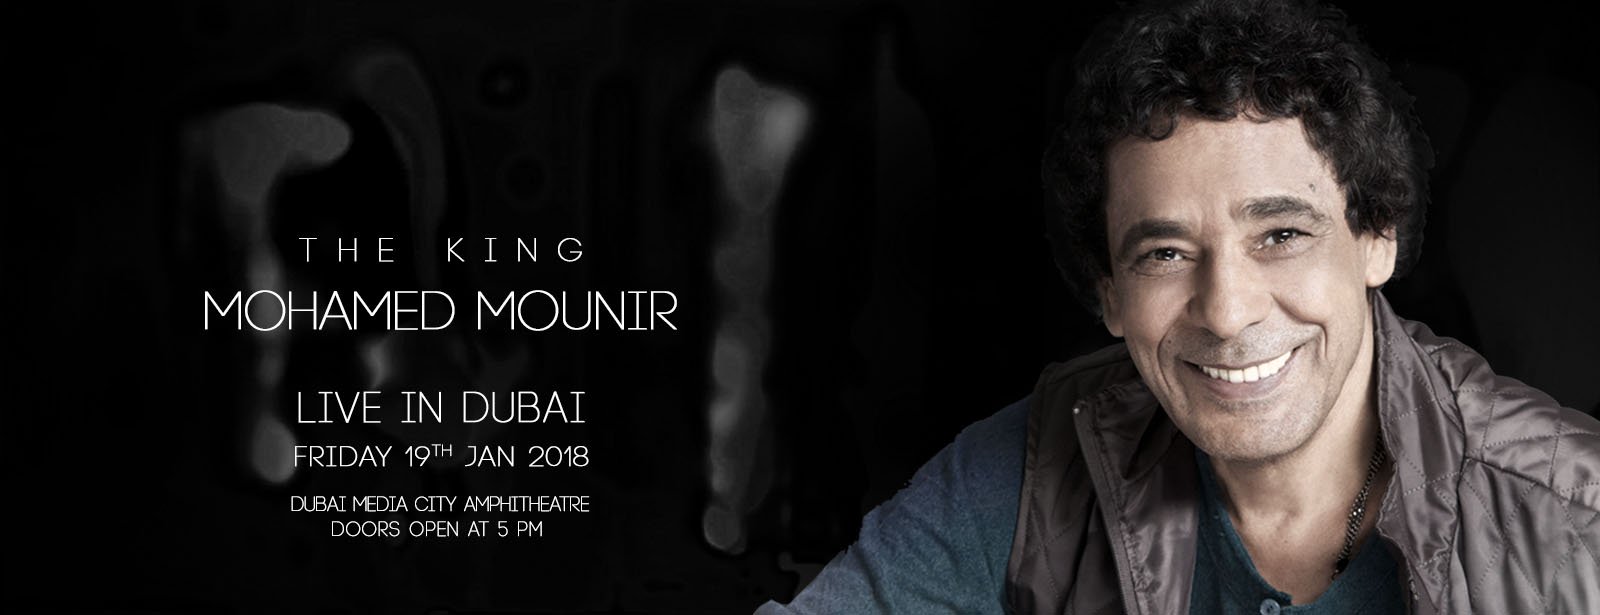 حفل محمد منير في دبي يناير المقبل